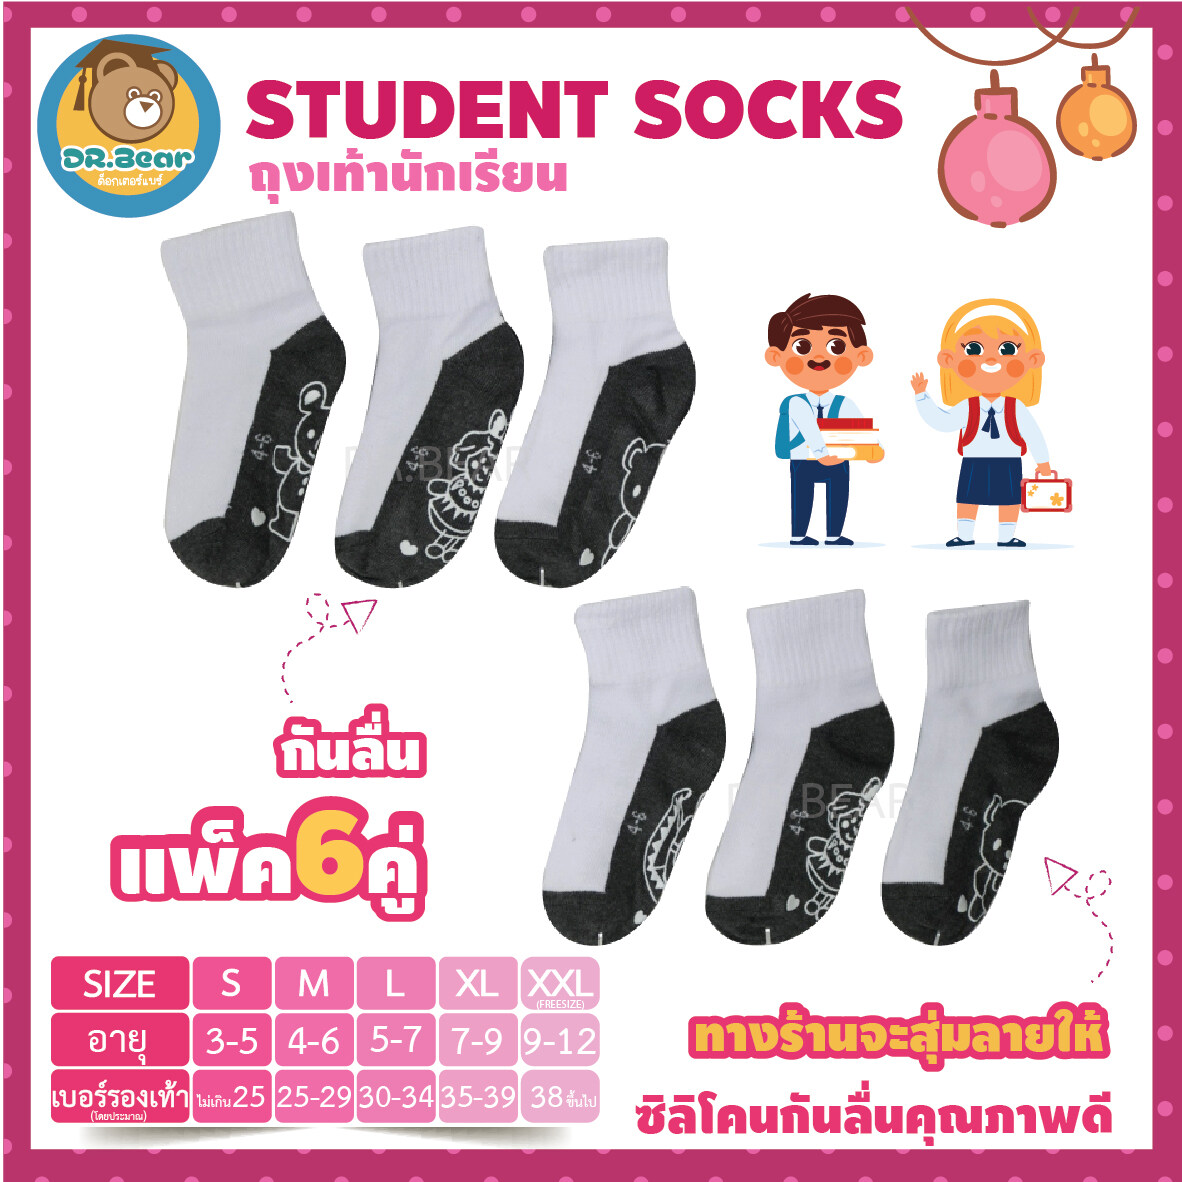 ???ถุงเท้านักเรียนข้อสั้น สีขาวพื้นเทากันลื่น ยางกันลื่นคุณภาพดี ตัวหนาคุณภาพ ทางร้านจะสุ่มลายให้เอง(แพ็ค6คู่)students socks